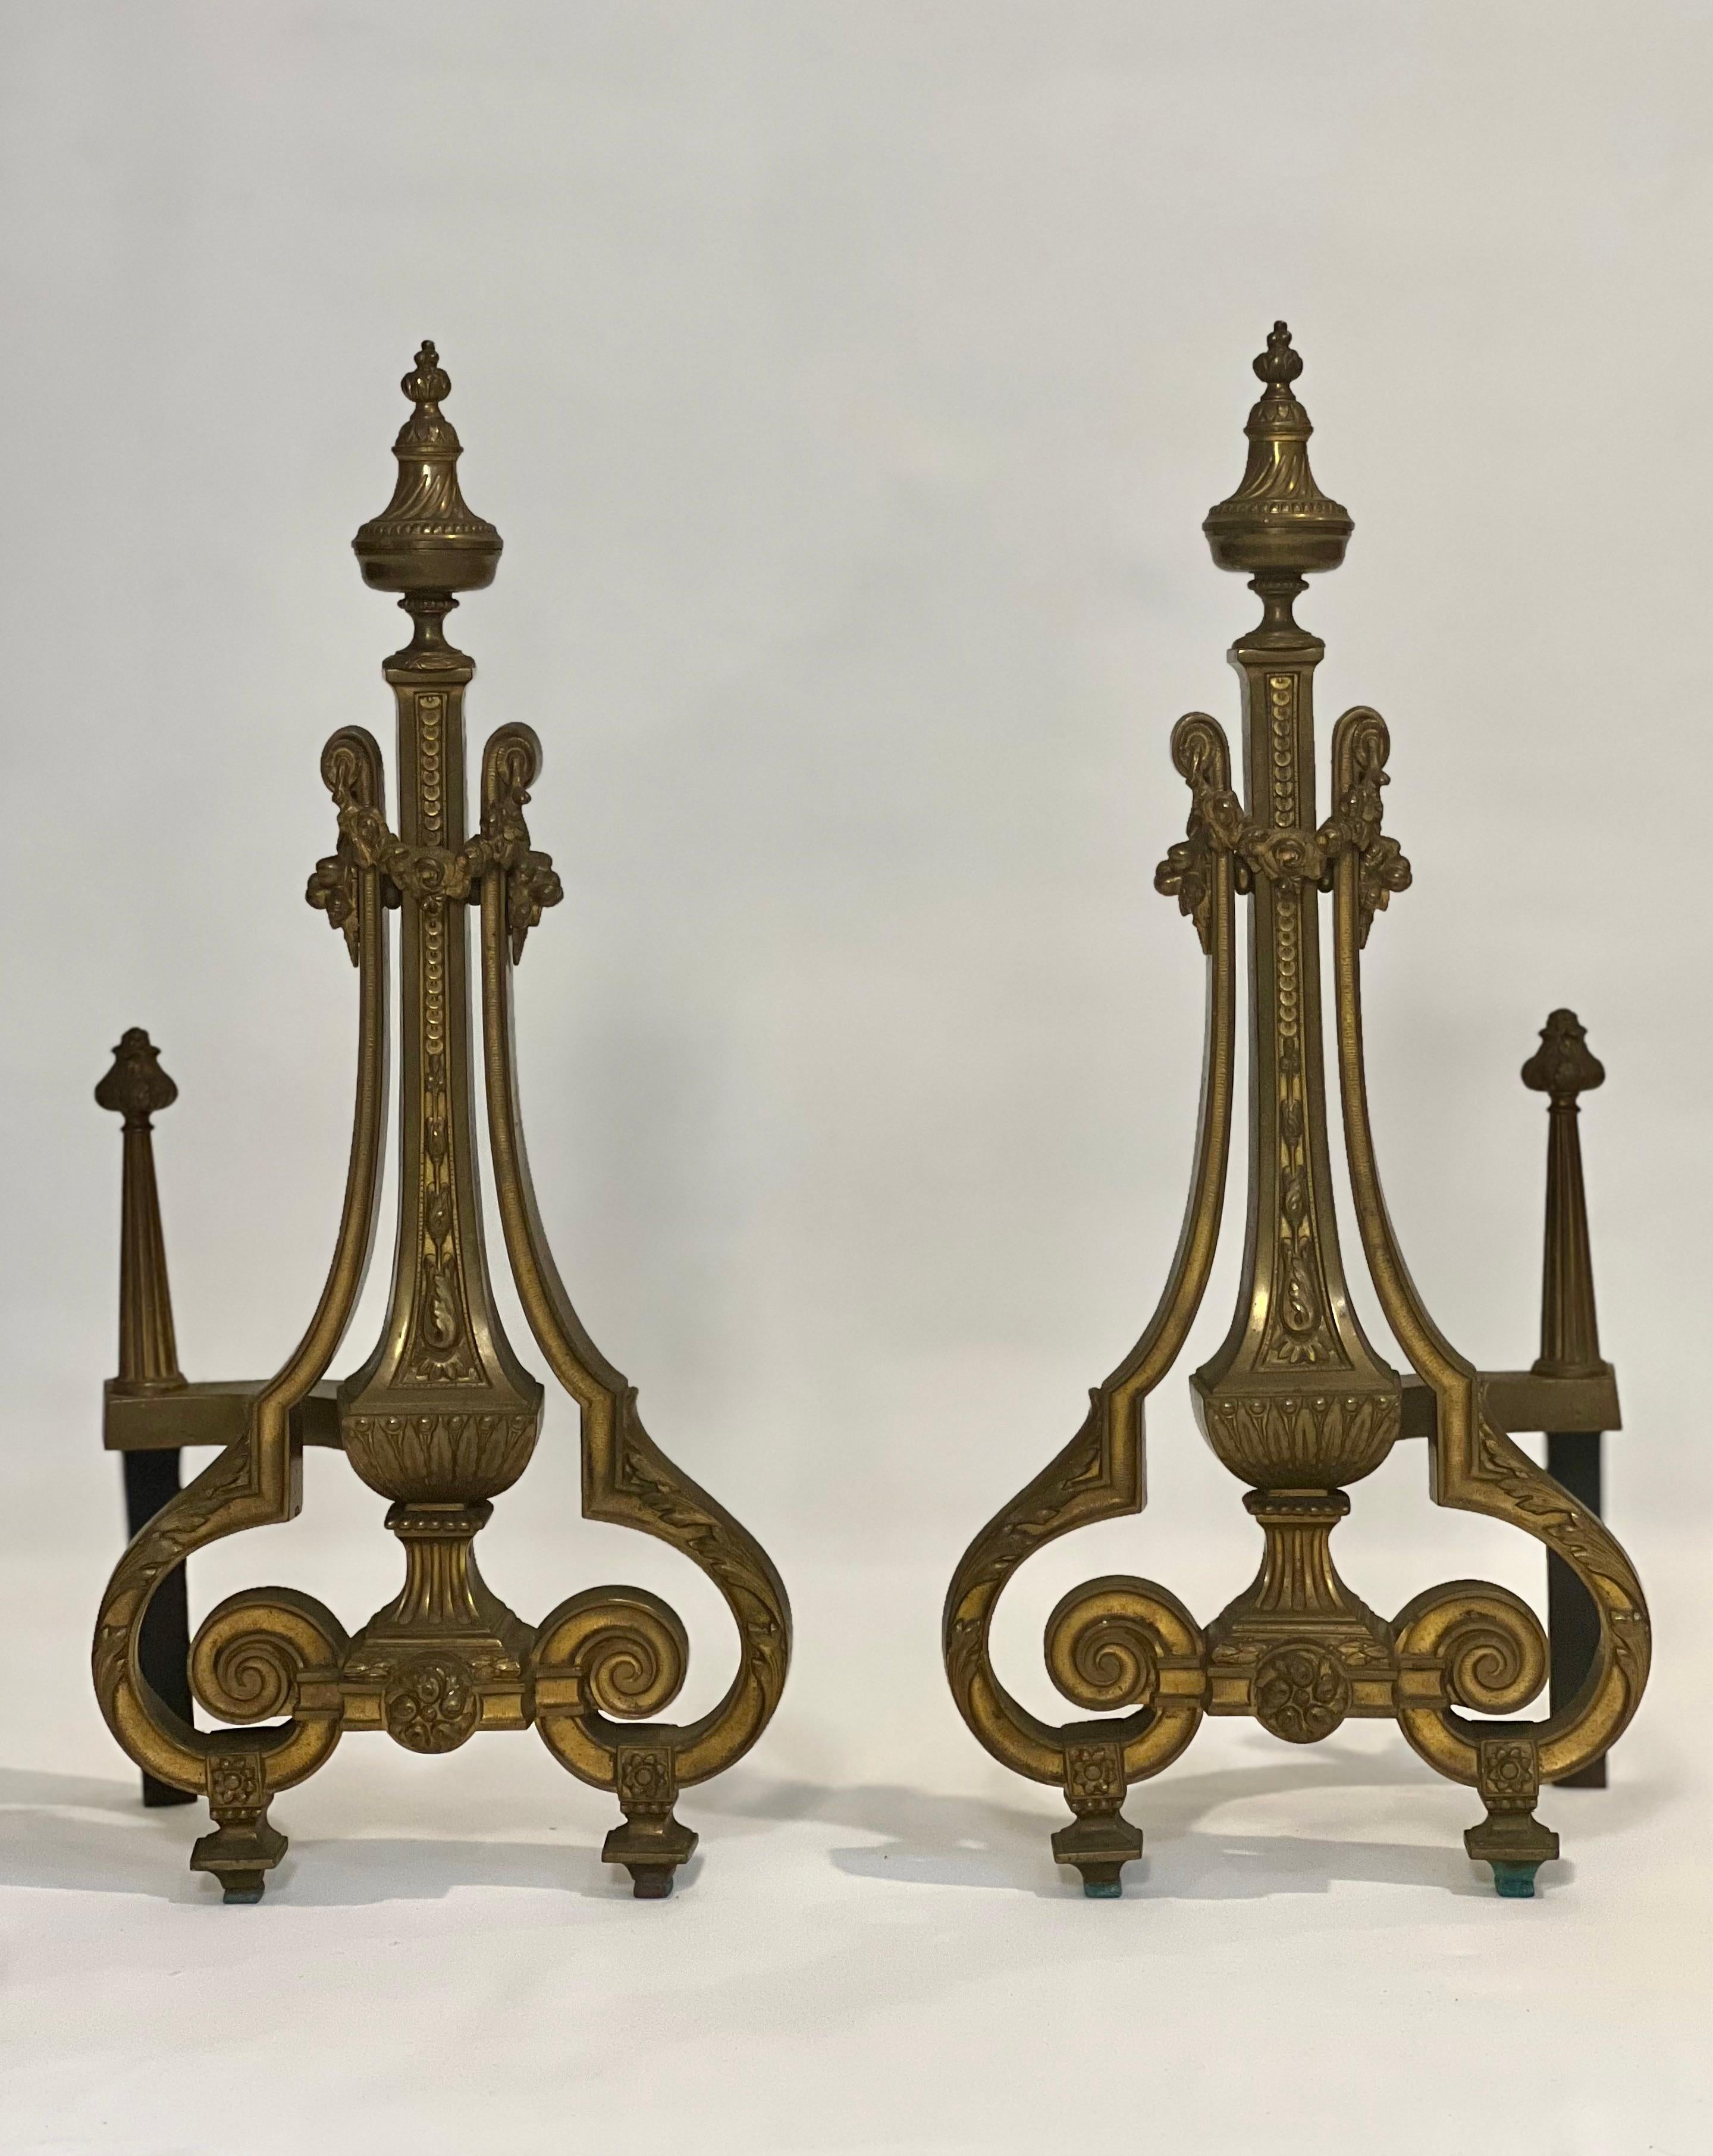 Neoklassische vergoldete Messing-Andirons im französischen Empire-Stil von William H. Jackson Company, Anfang des 20.

Unglaublich detailliertes Paar, von den Endstücken bis hin zu den Füßen mit Blumen- und Blattmotiven. Wunderschön geformt, mit